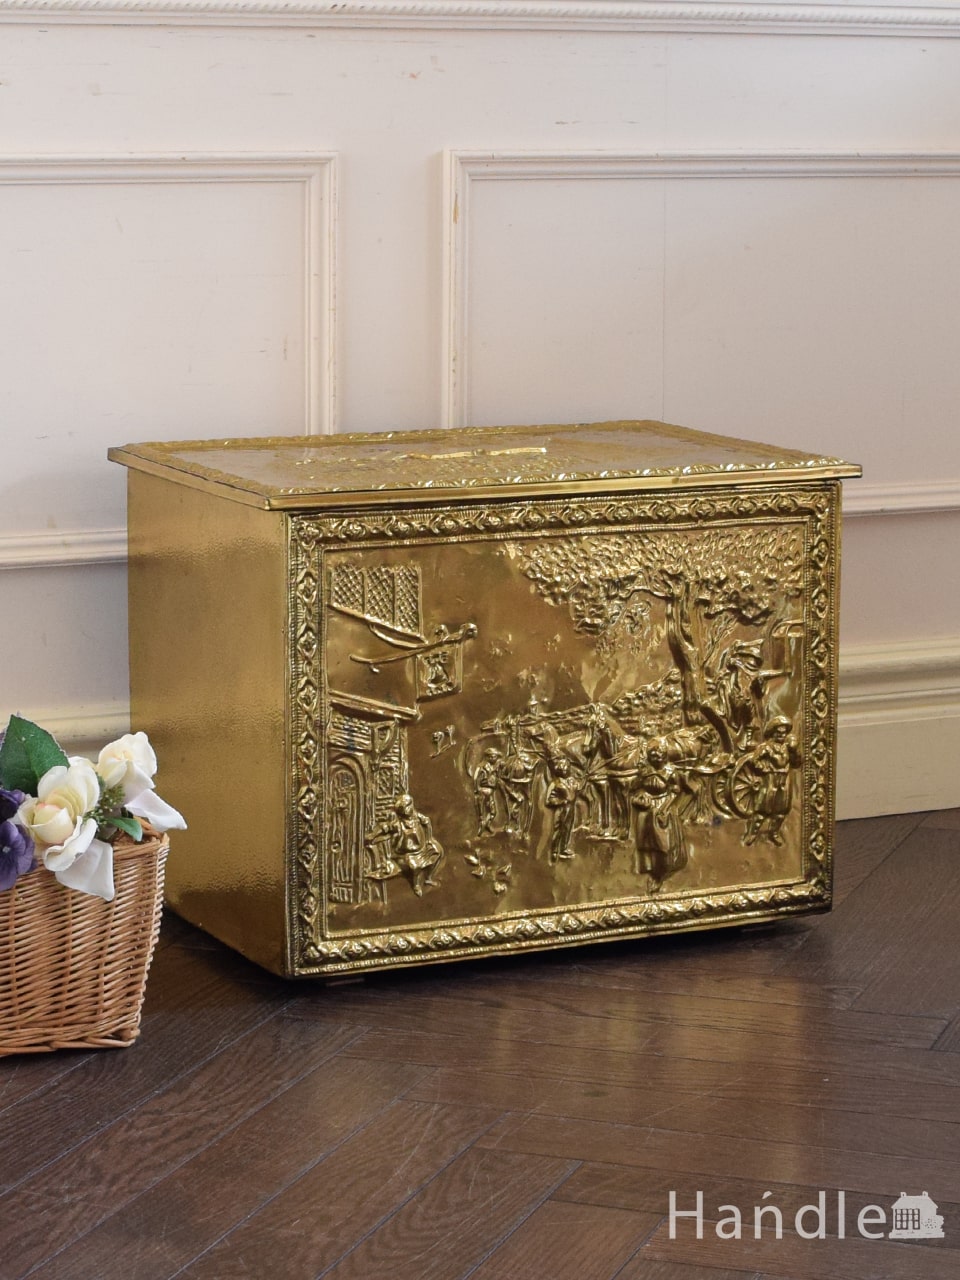 アンティークの真鍮の箱、イギリスで見つけたブラスボックス